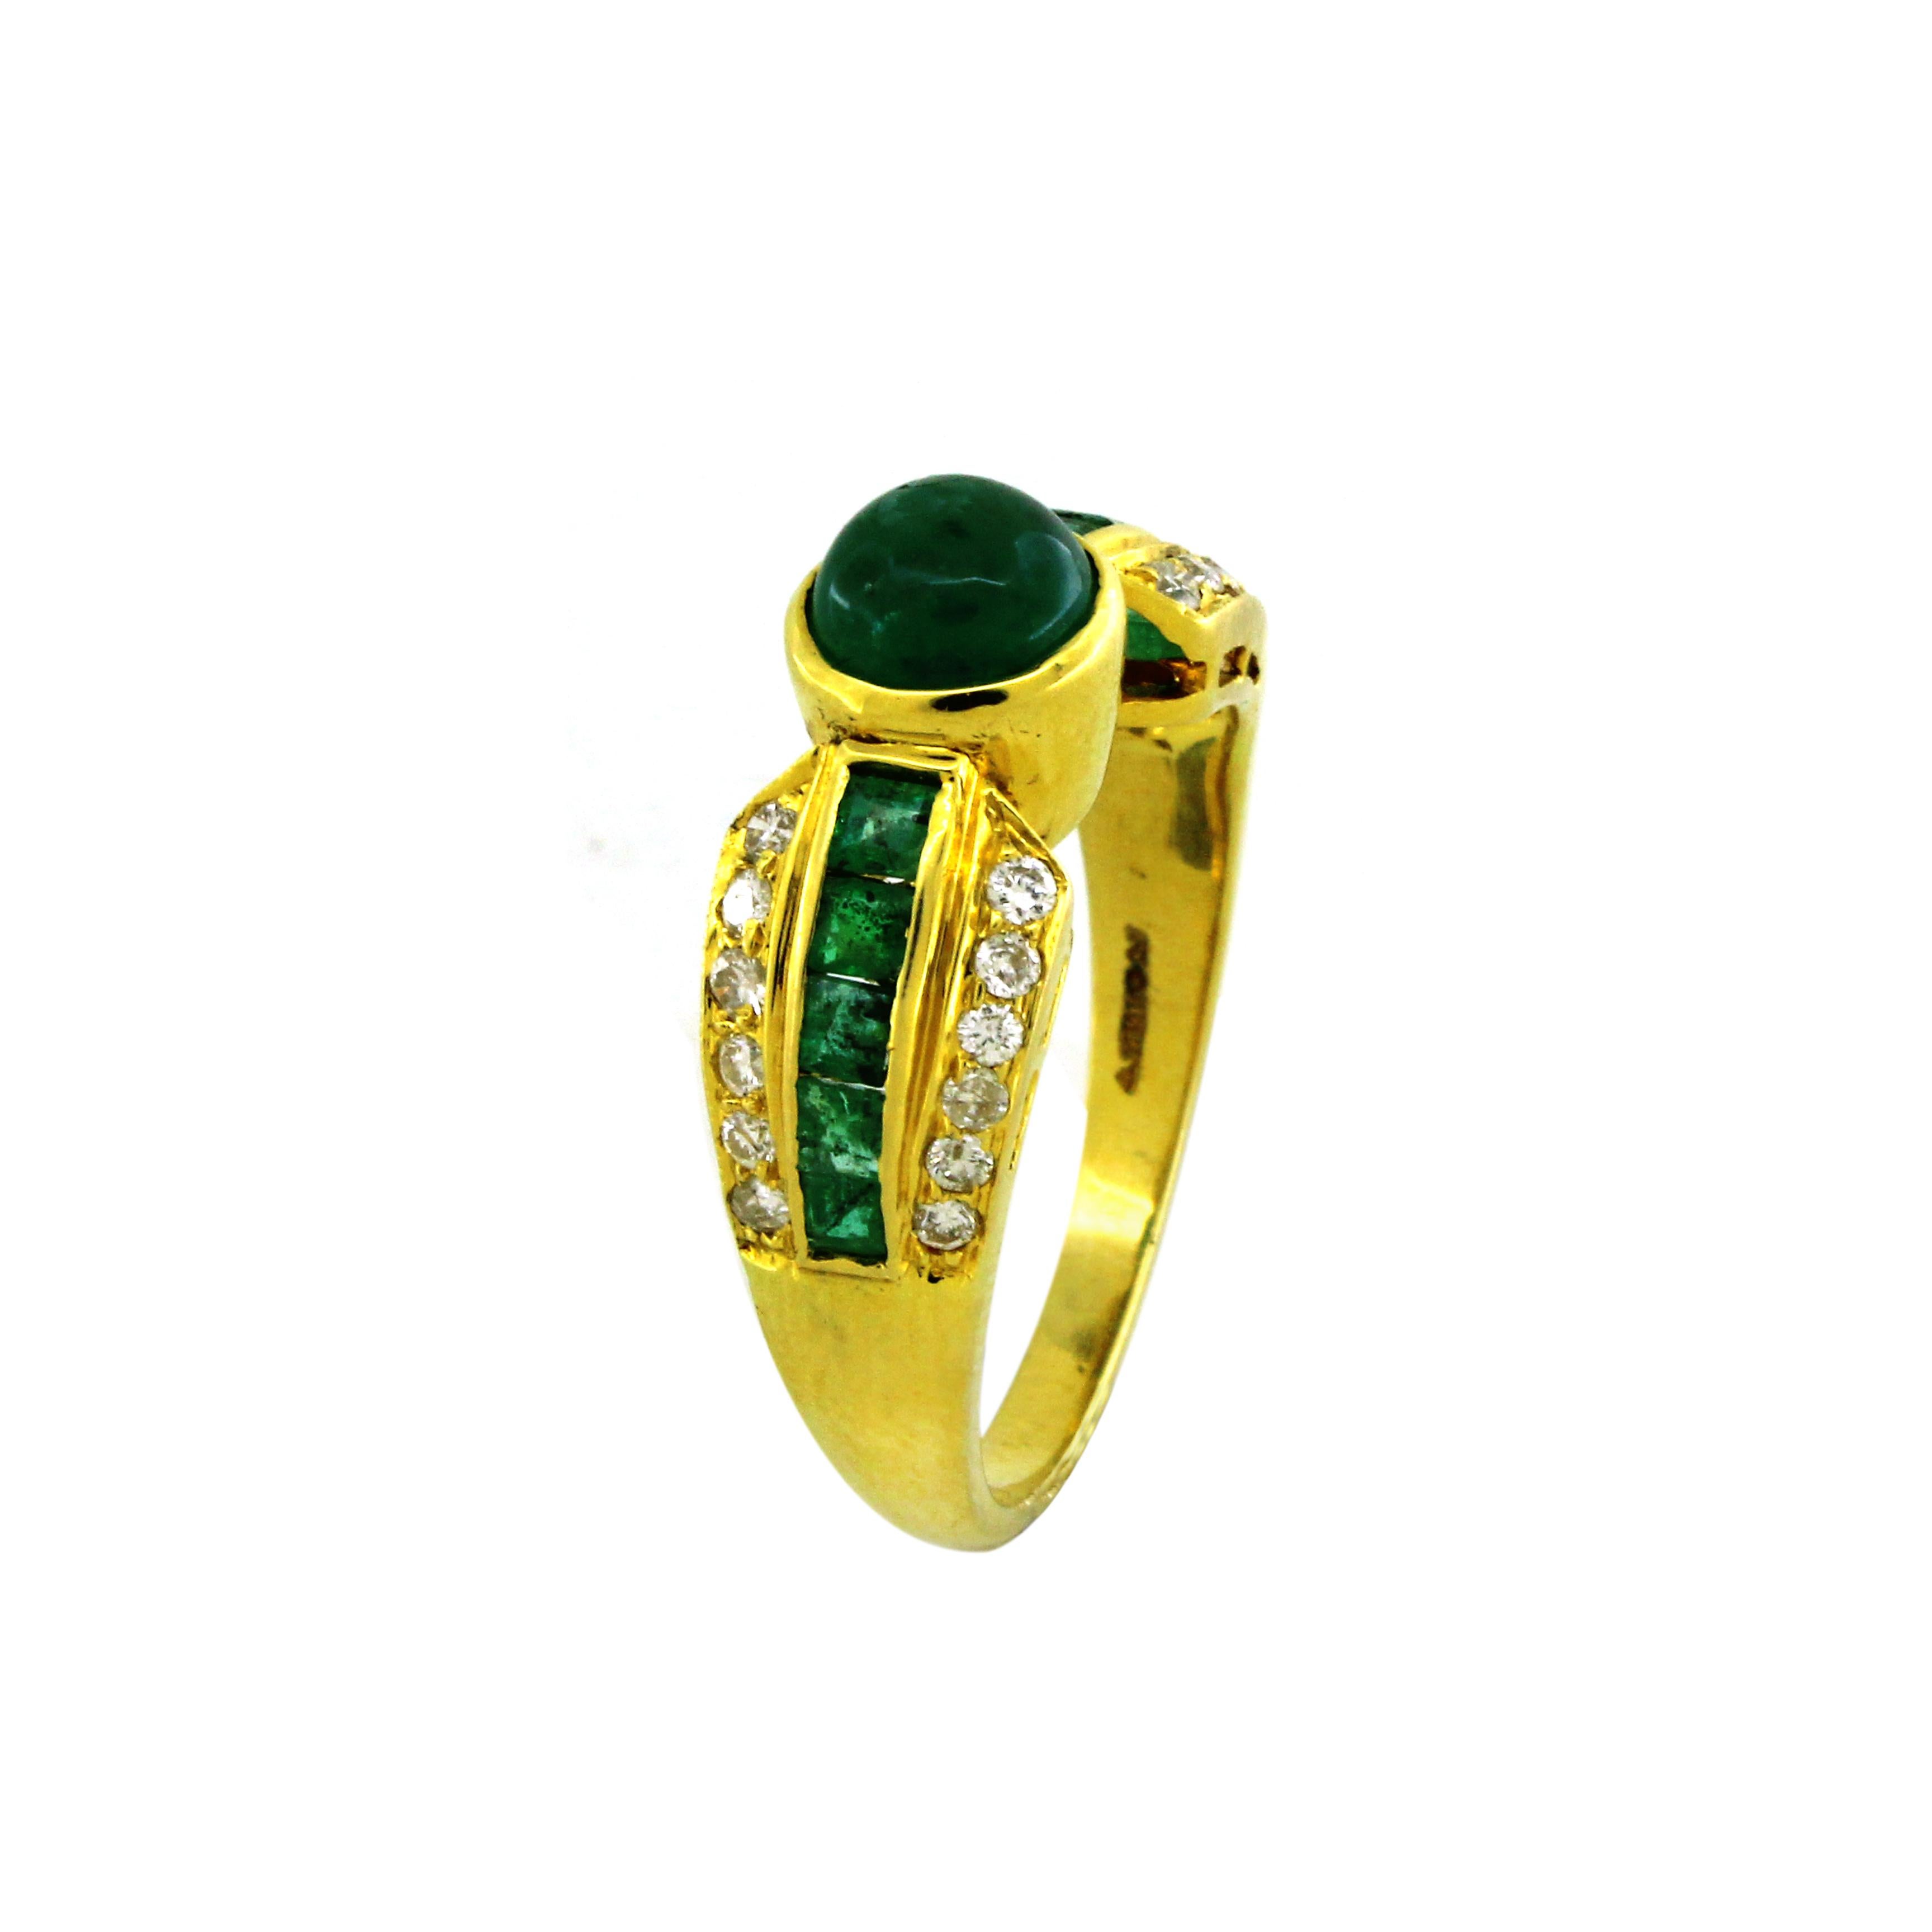 Dieser exquisite Ring aus luxuriösem 22-karätigem Gelbgold mit einem Gewicht von 4,45 Gramm ist ein atemberaubendes Meisterwerk der Juwelierskunst. Im Mittelpunkt steht ein glänzender 1,58-Karat-Smaragd, der Eleganz und Opulenz ausstrahlt. Das